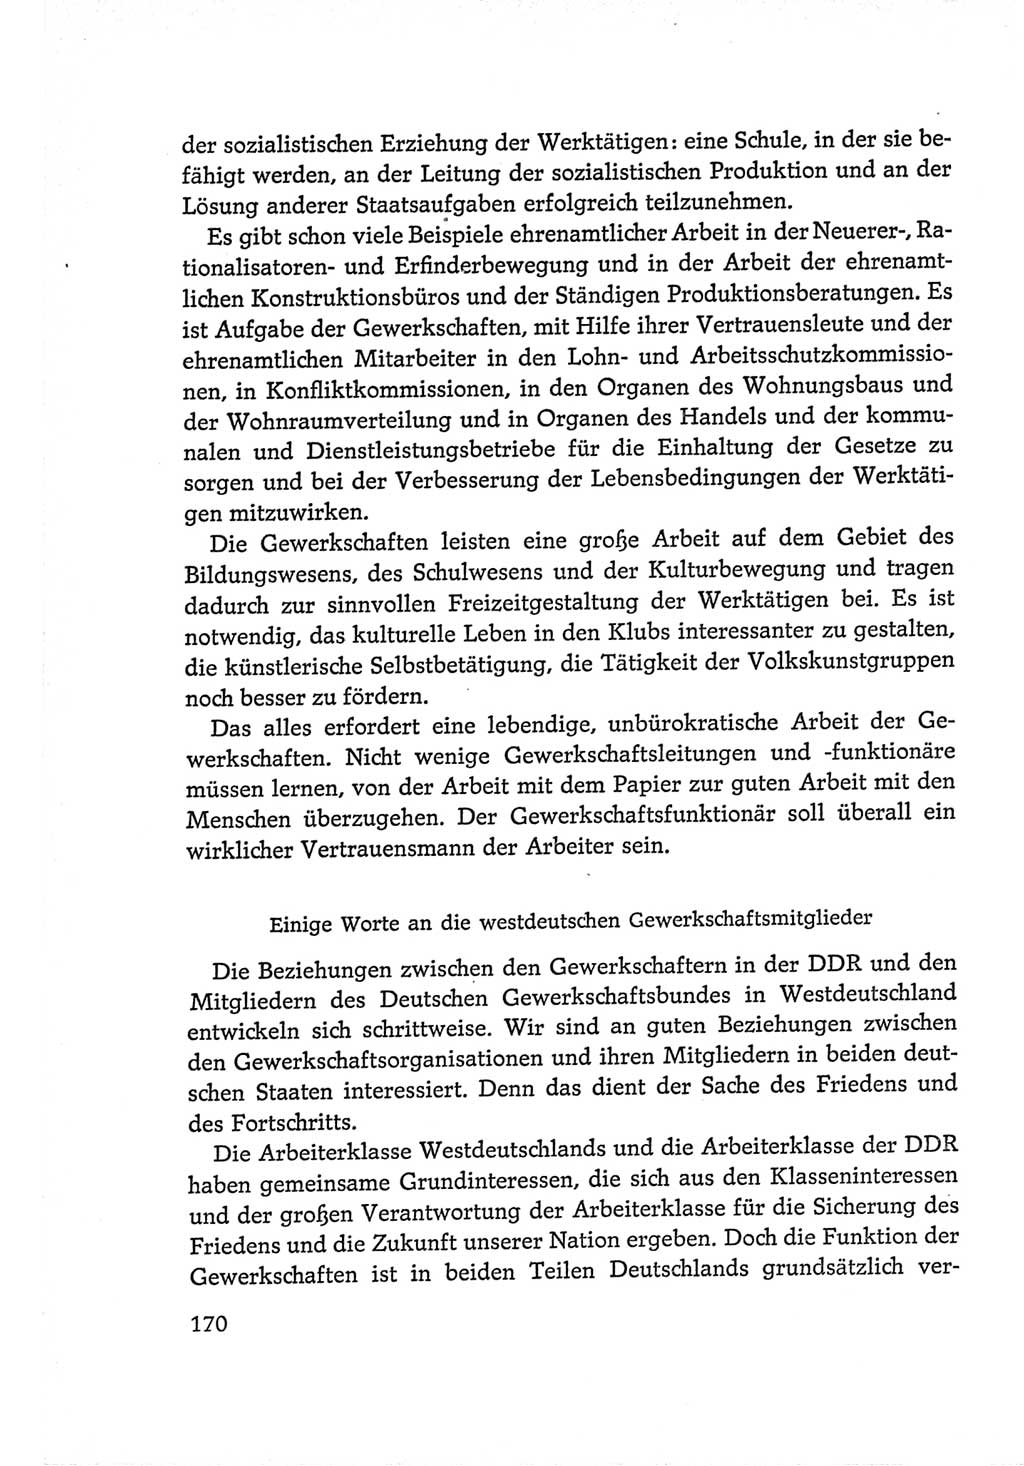 Protokoll der Verhandlungen des Ⅵ. Parteitages der Sozialistischen Einheitspartei Deutschlands (SED) [Deutsche Demokratische Republik (DDR)] 1963, Band Ⅰ, Seite 170 (Prot. Verh. Ⅵ. PT SED DDR 1963, Bd. Ⅰ, S. 170)